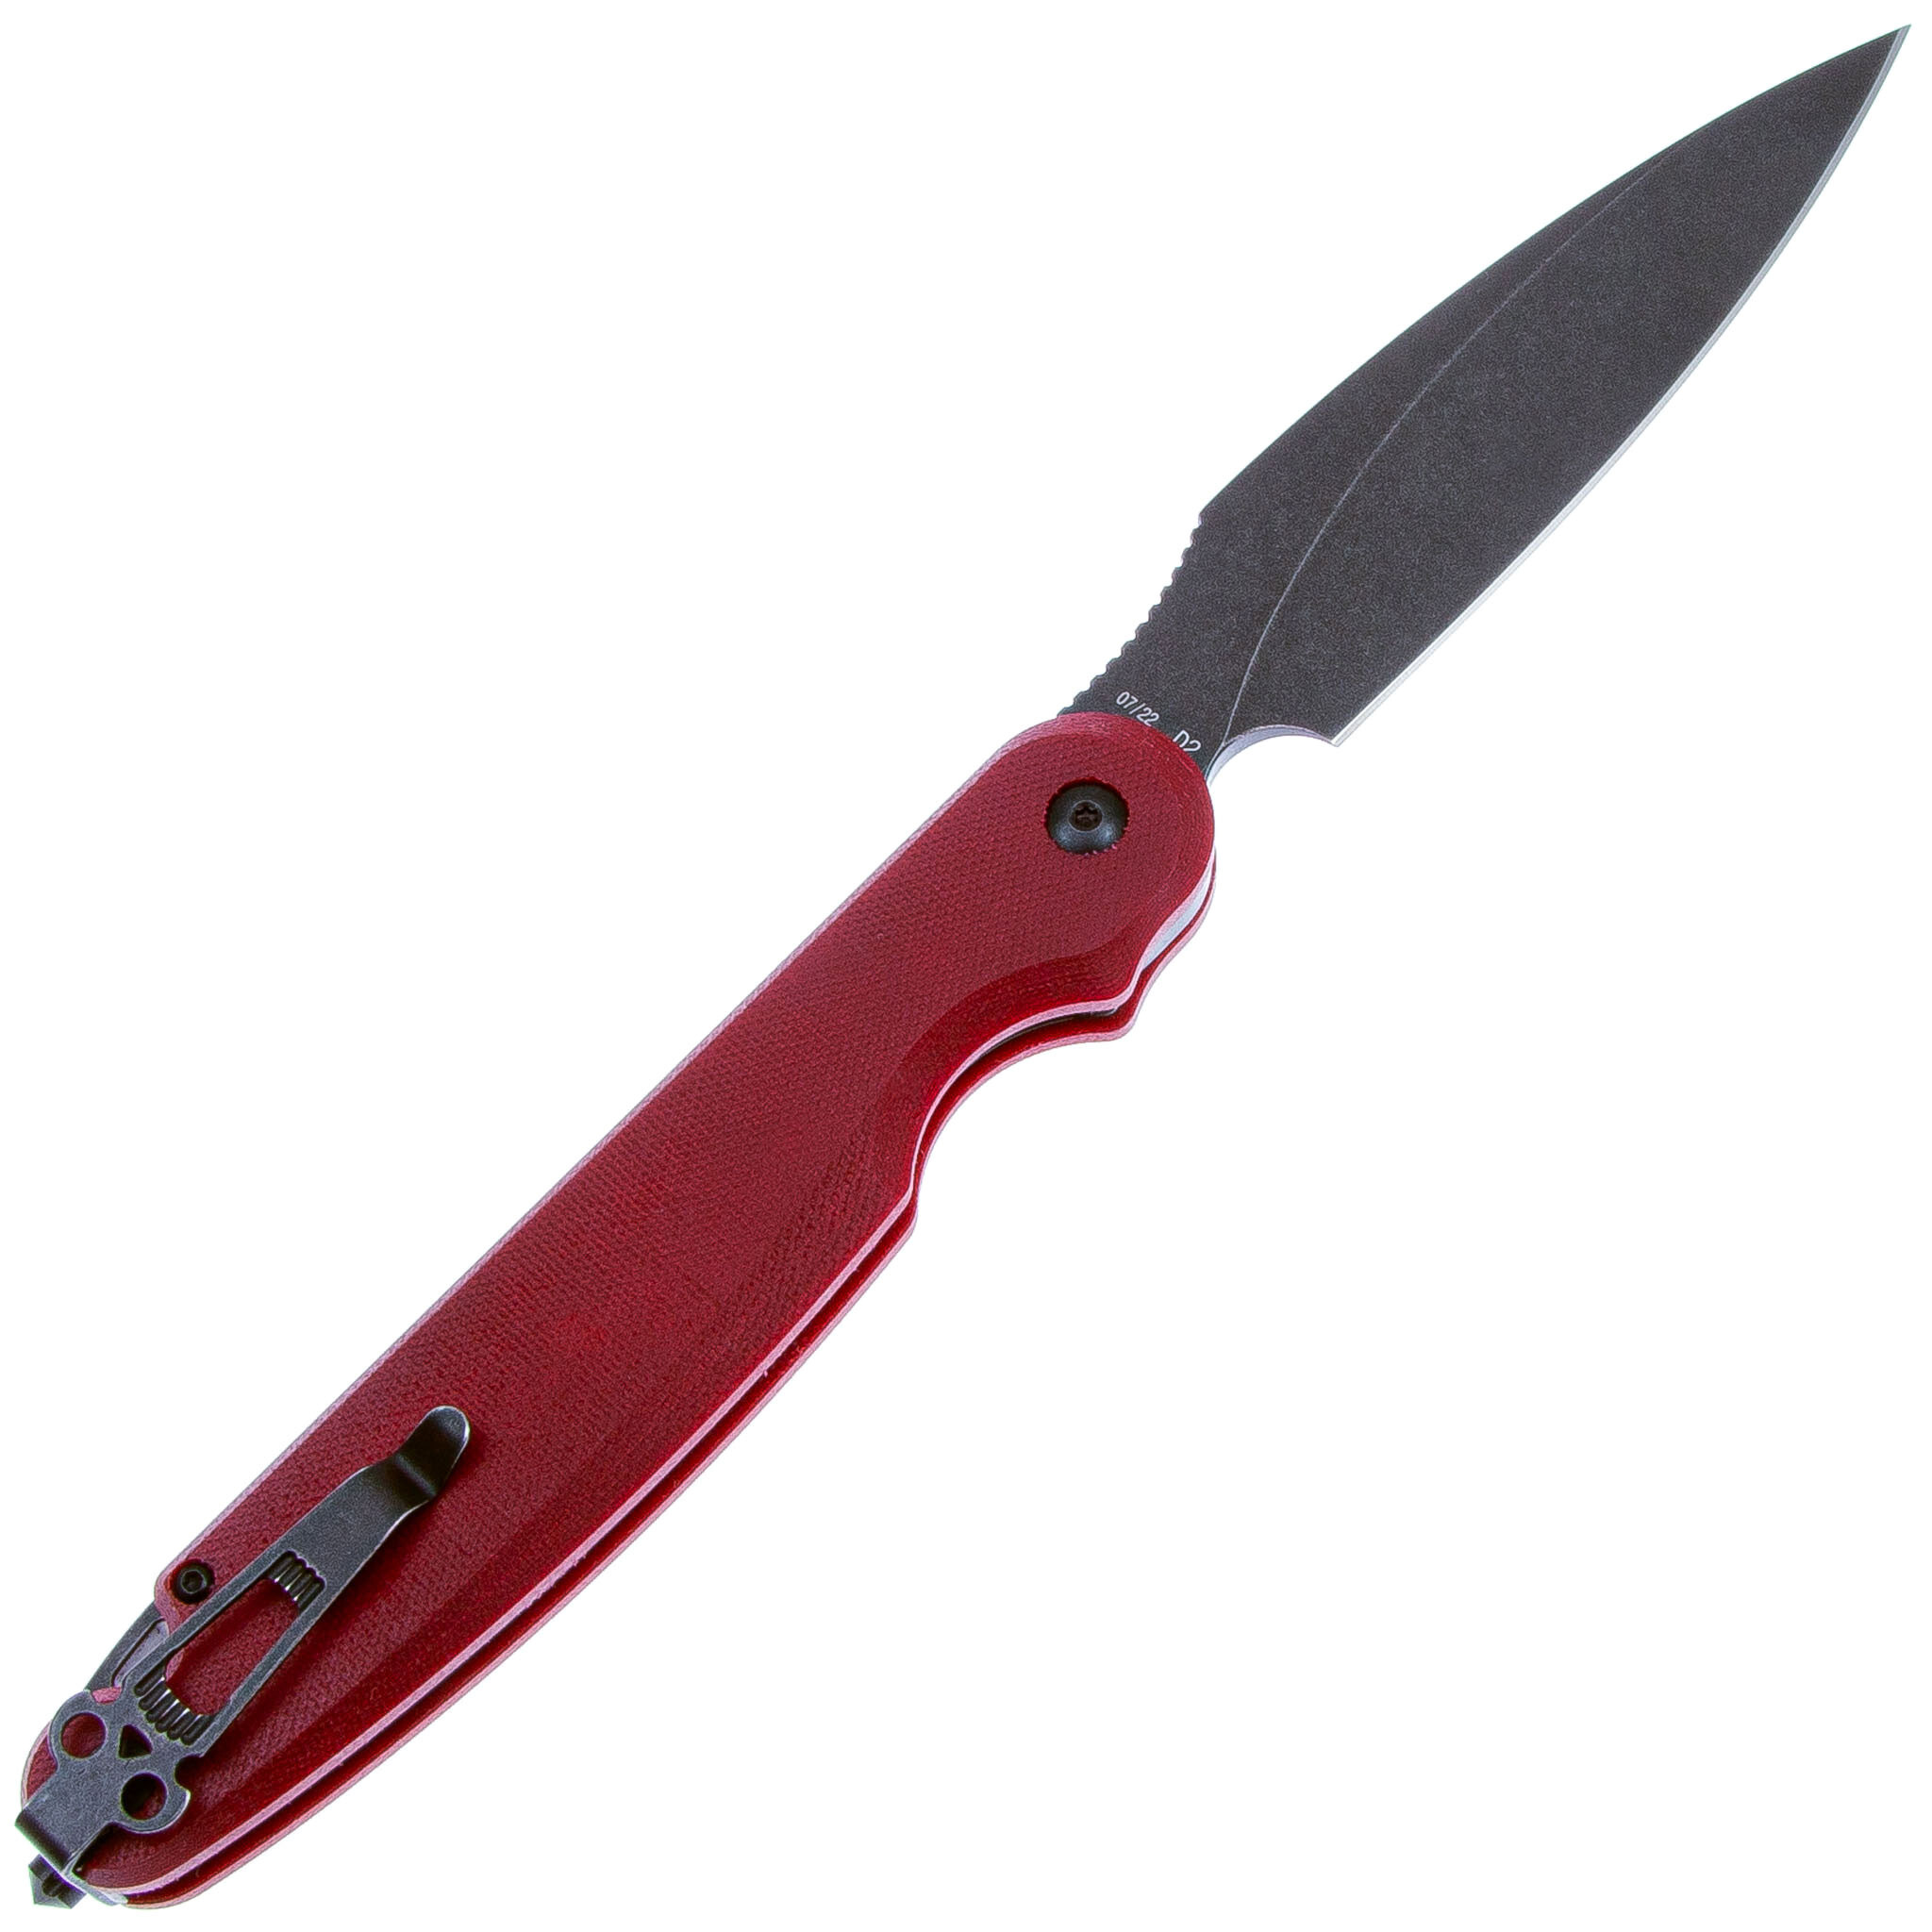 Складной нож Daggerr Parrot 3.0 Red Micarta, сталь D2, рукоять микарта - фото 2